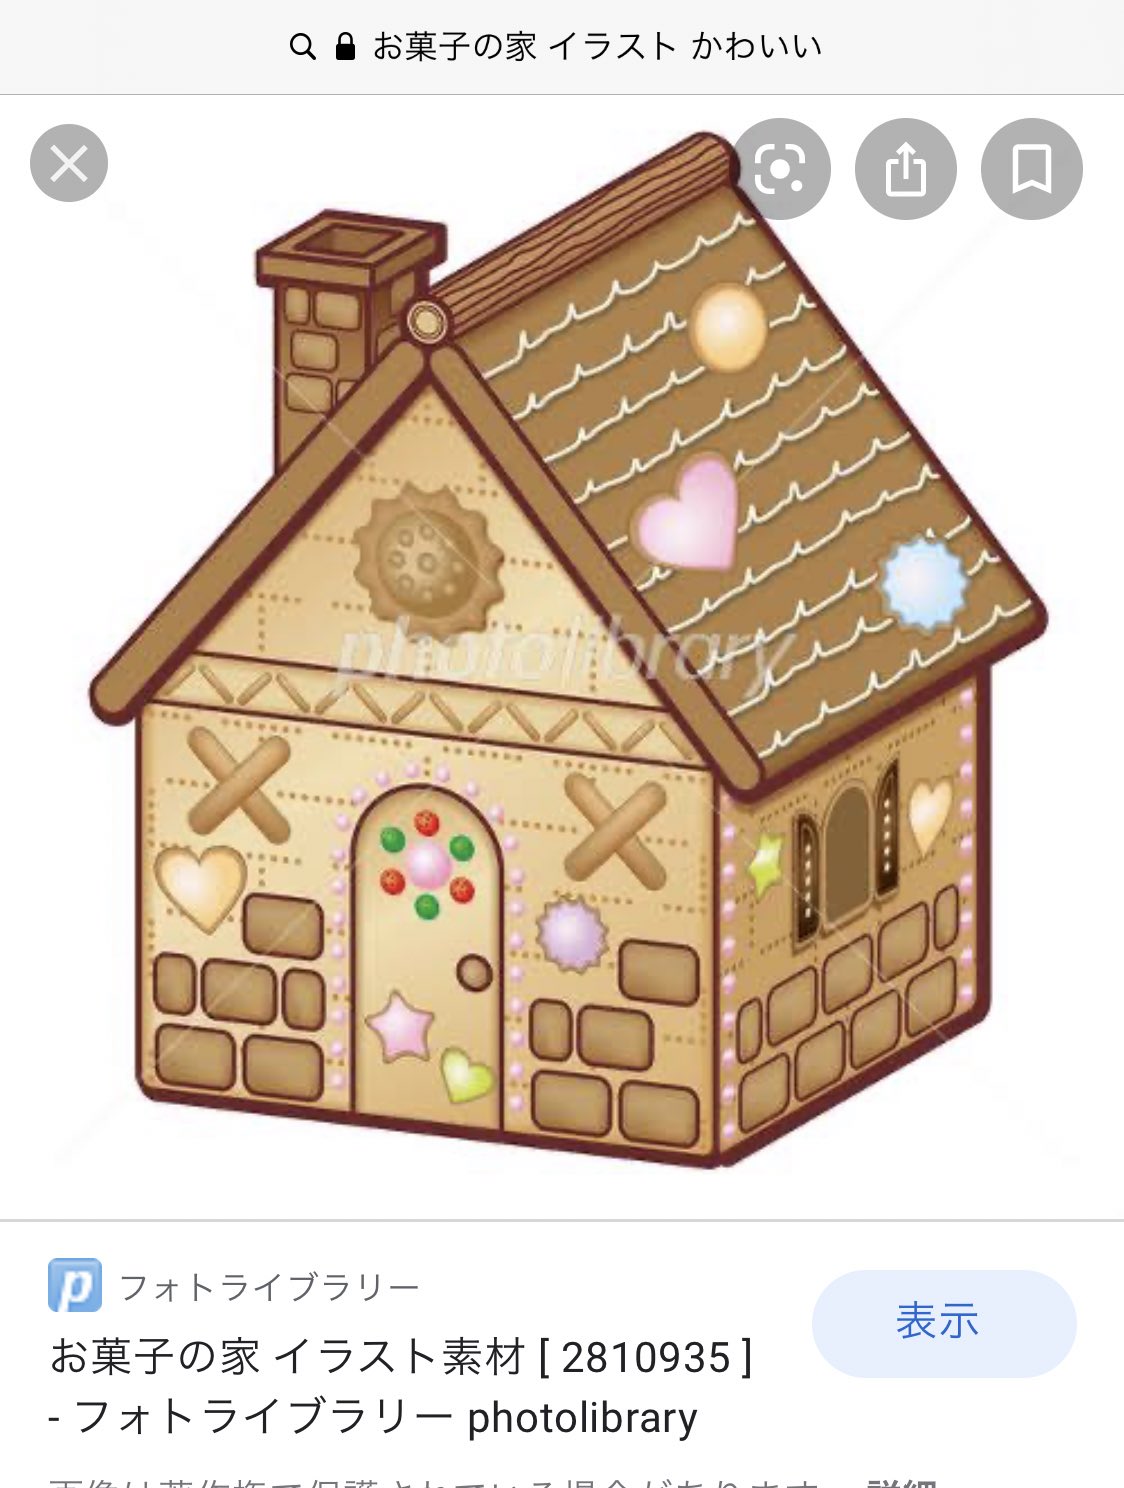 しめろでぃ お菓子の家も お菓子の家 イラスト かわいい で検索してからアレンジ加えてるのまじで可愛いな T Co Xpbobgem1p Twitter